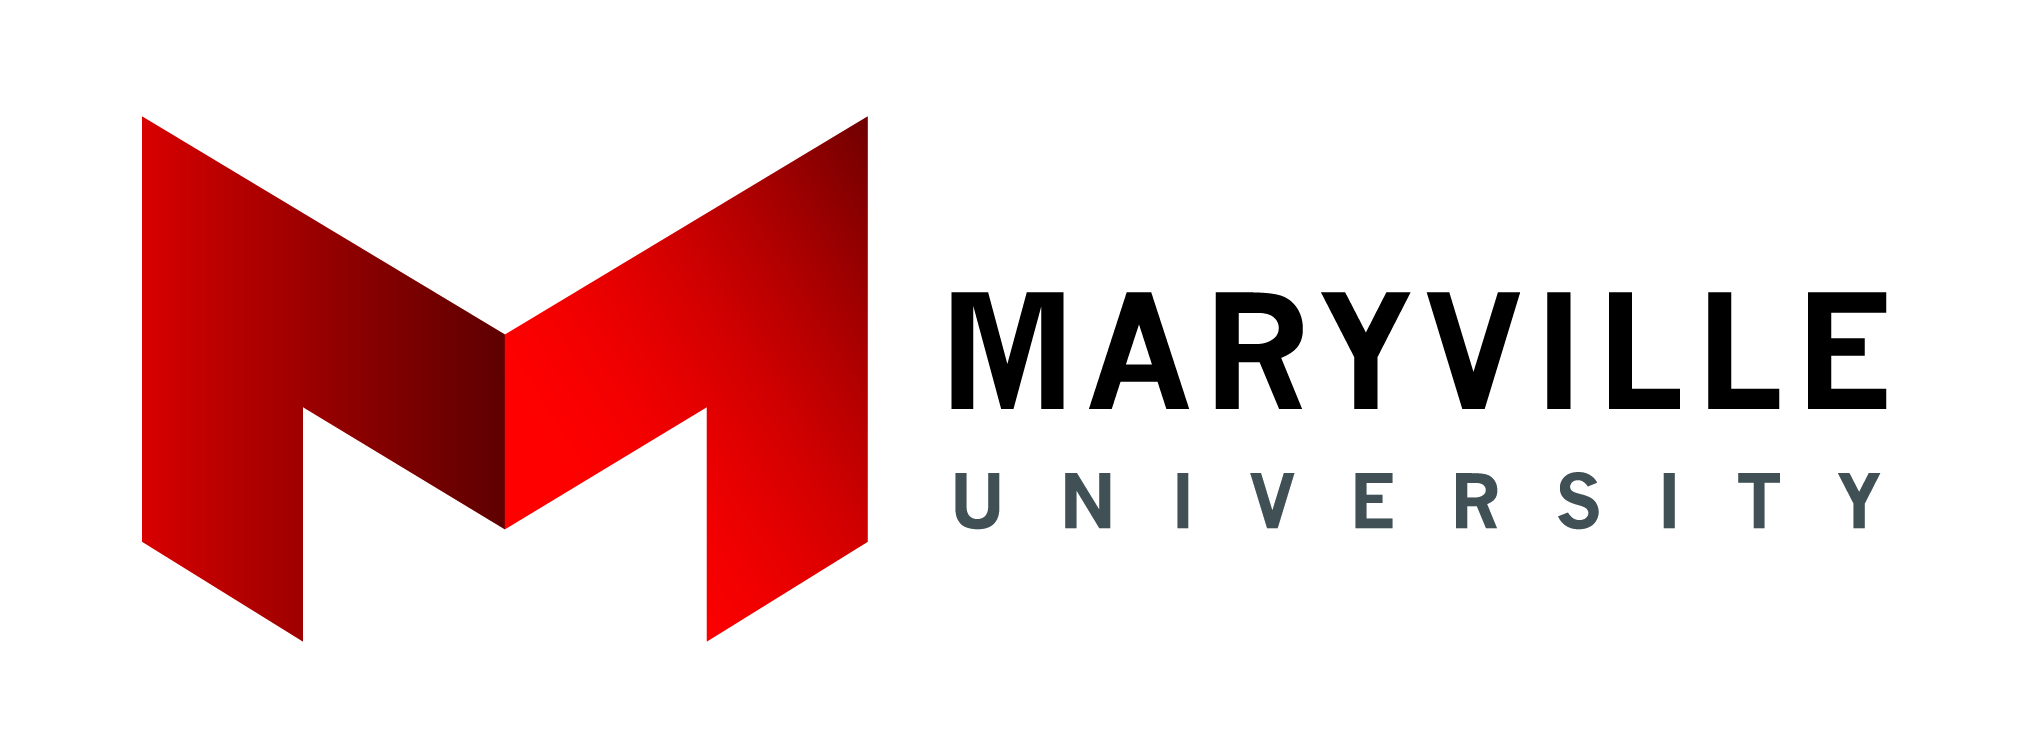 maryville-logo.jpg